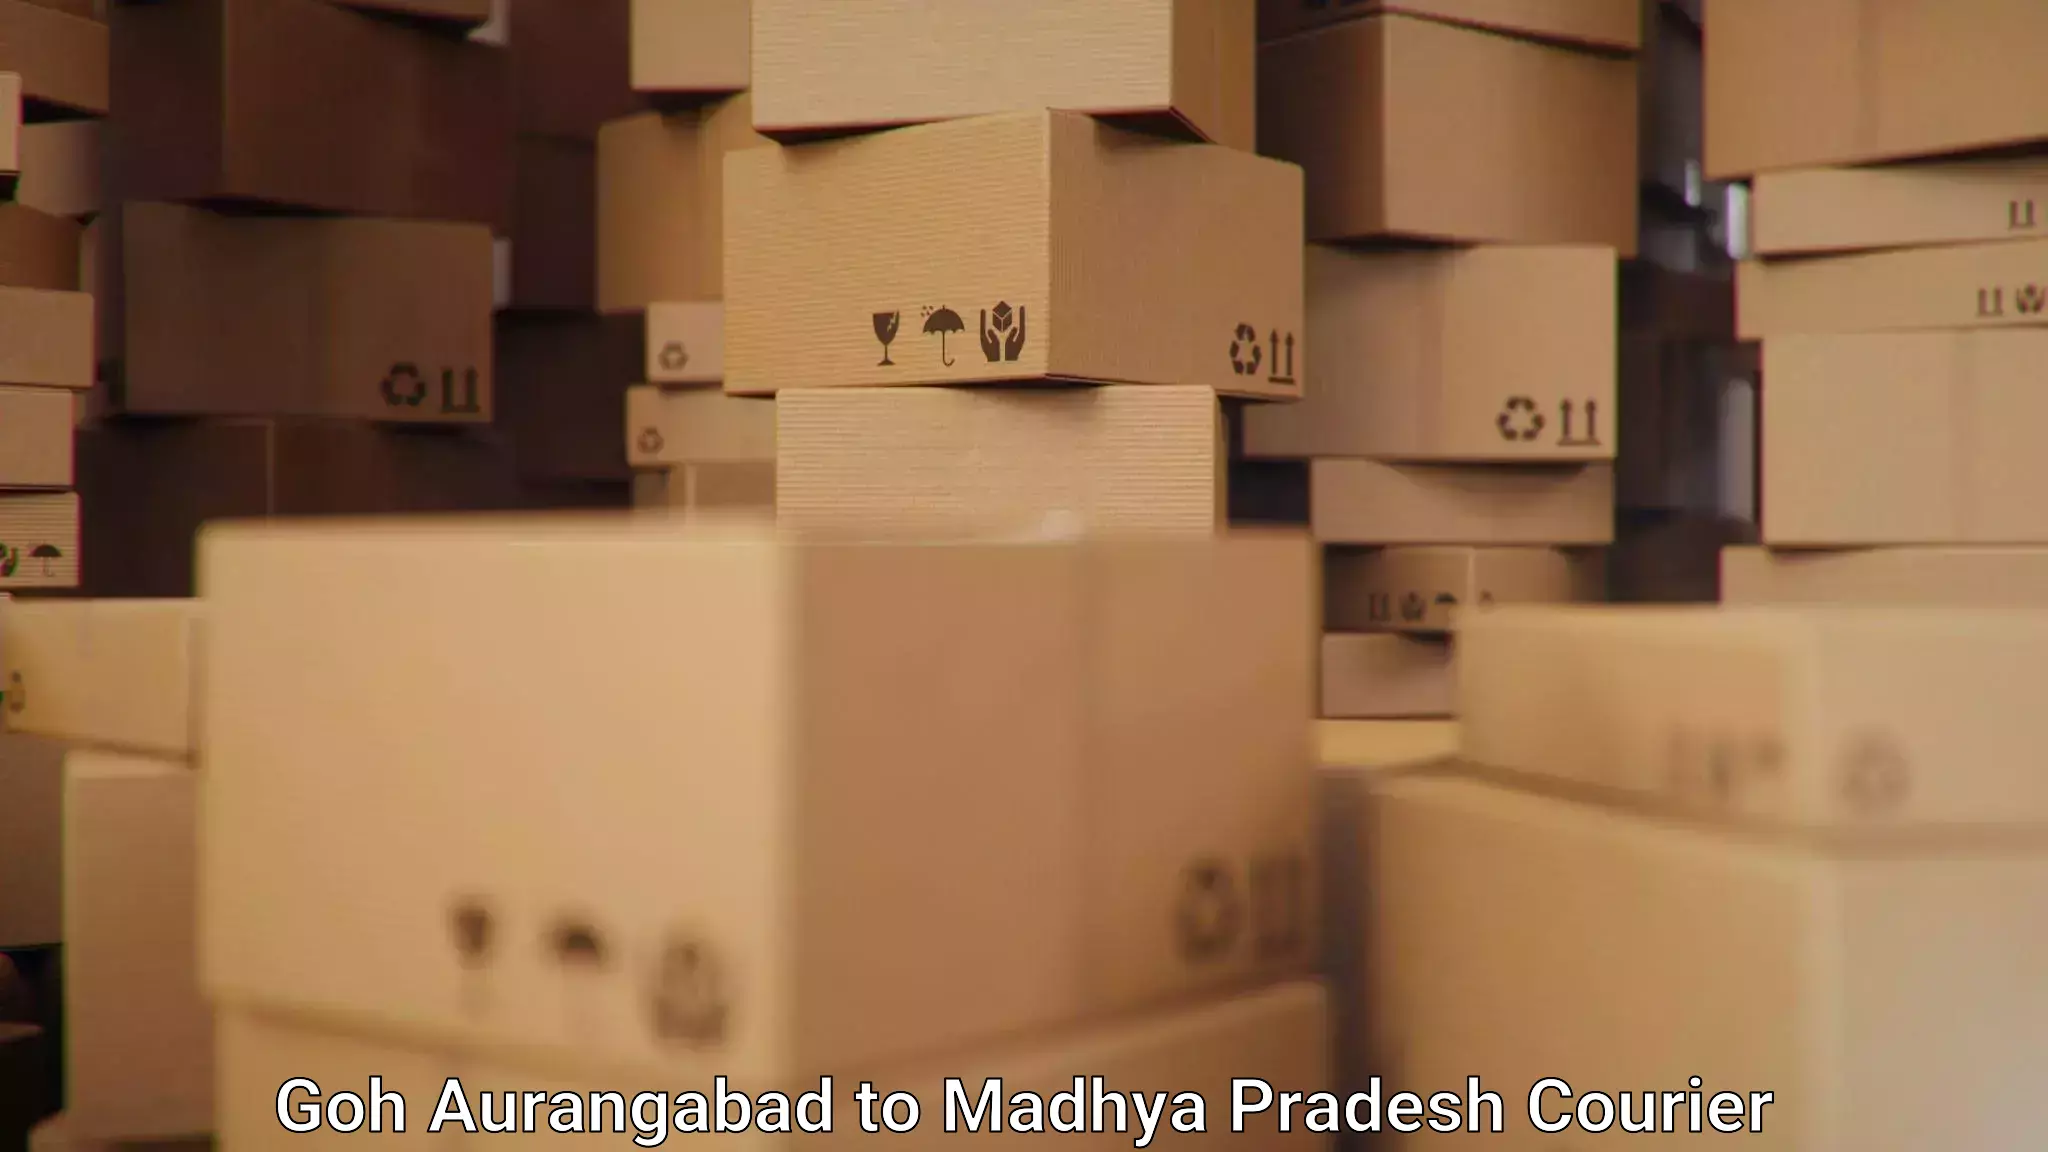 Shipping and handling Goh Aurangabad to Vidisha